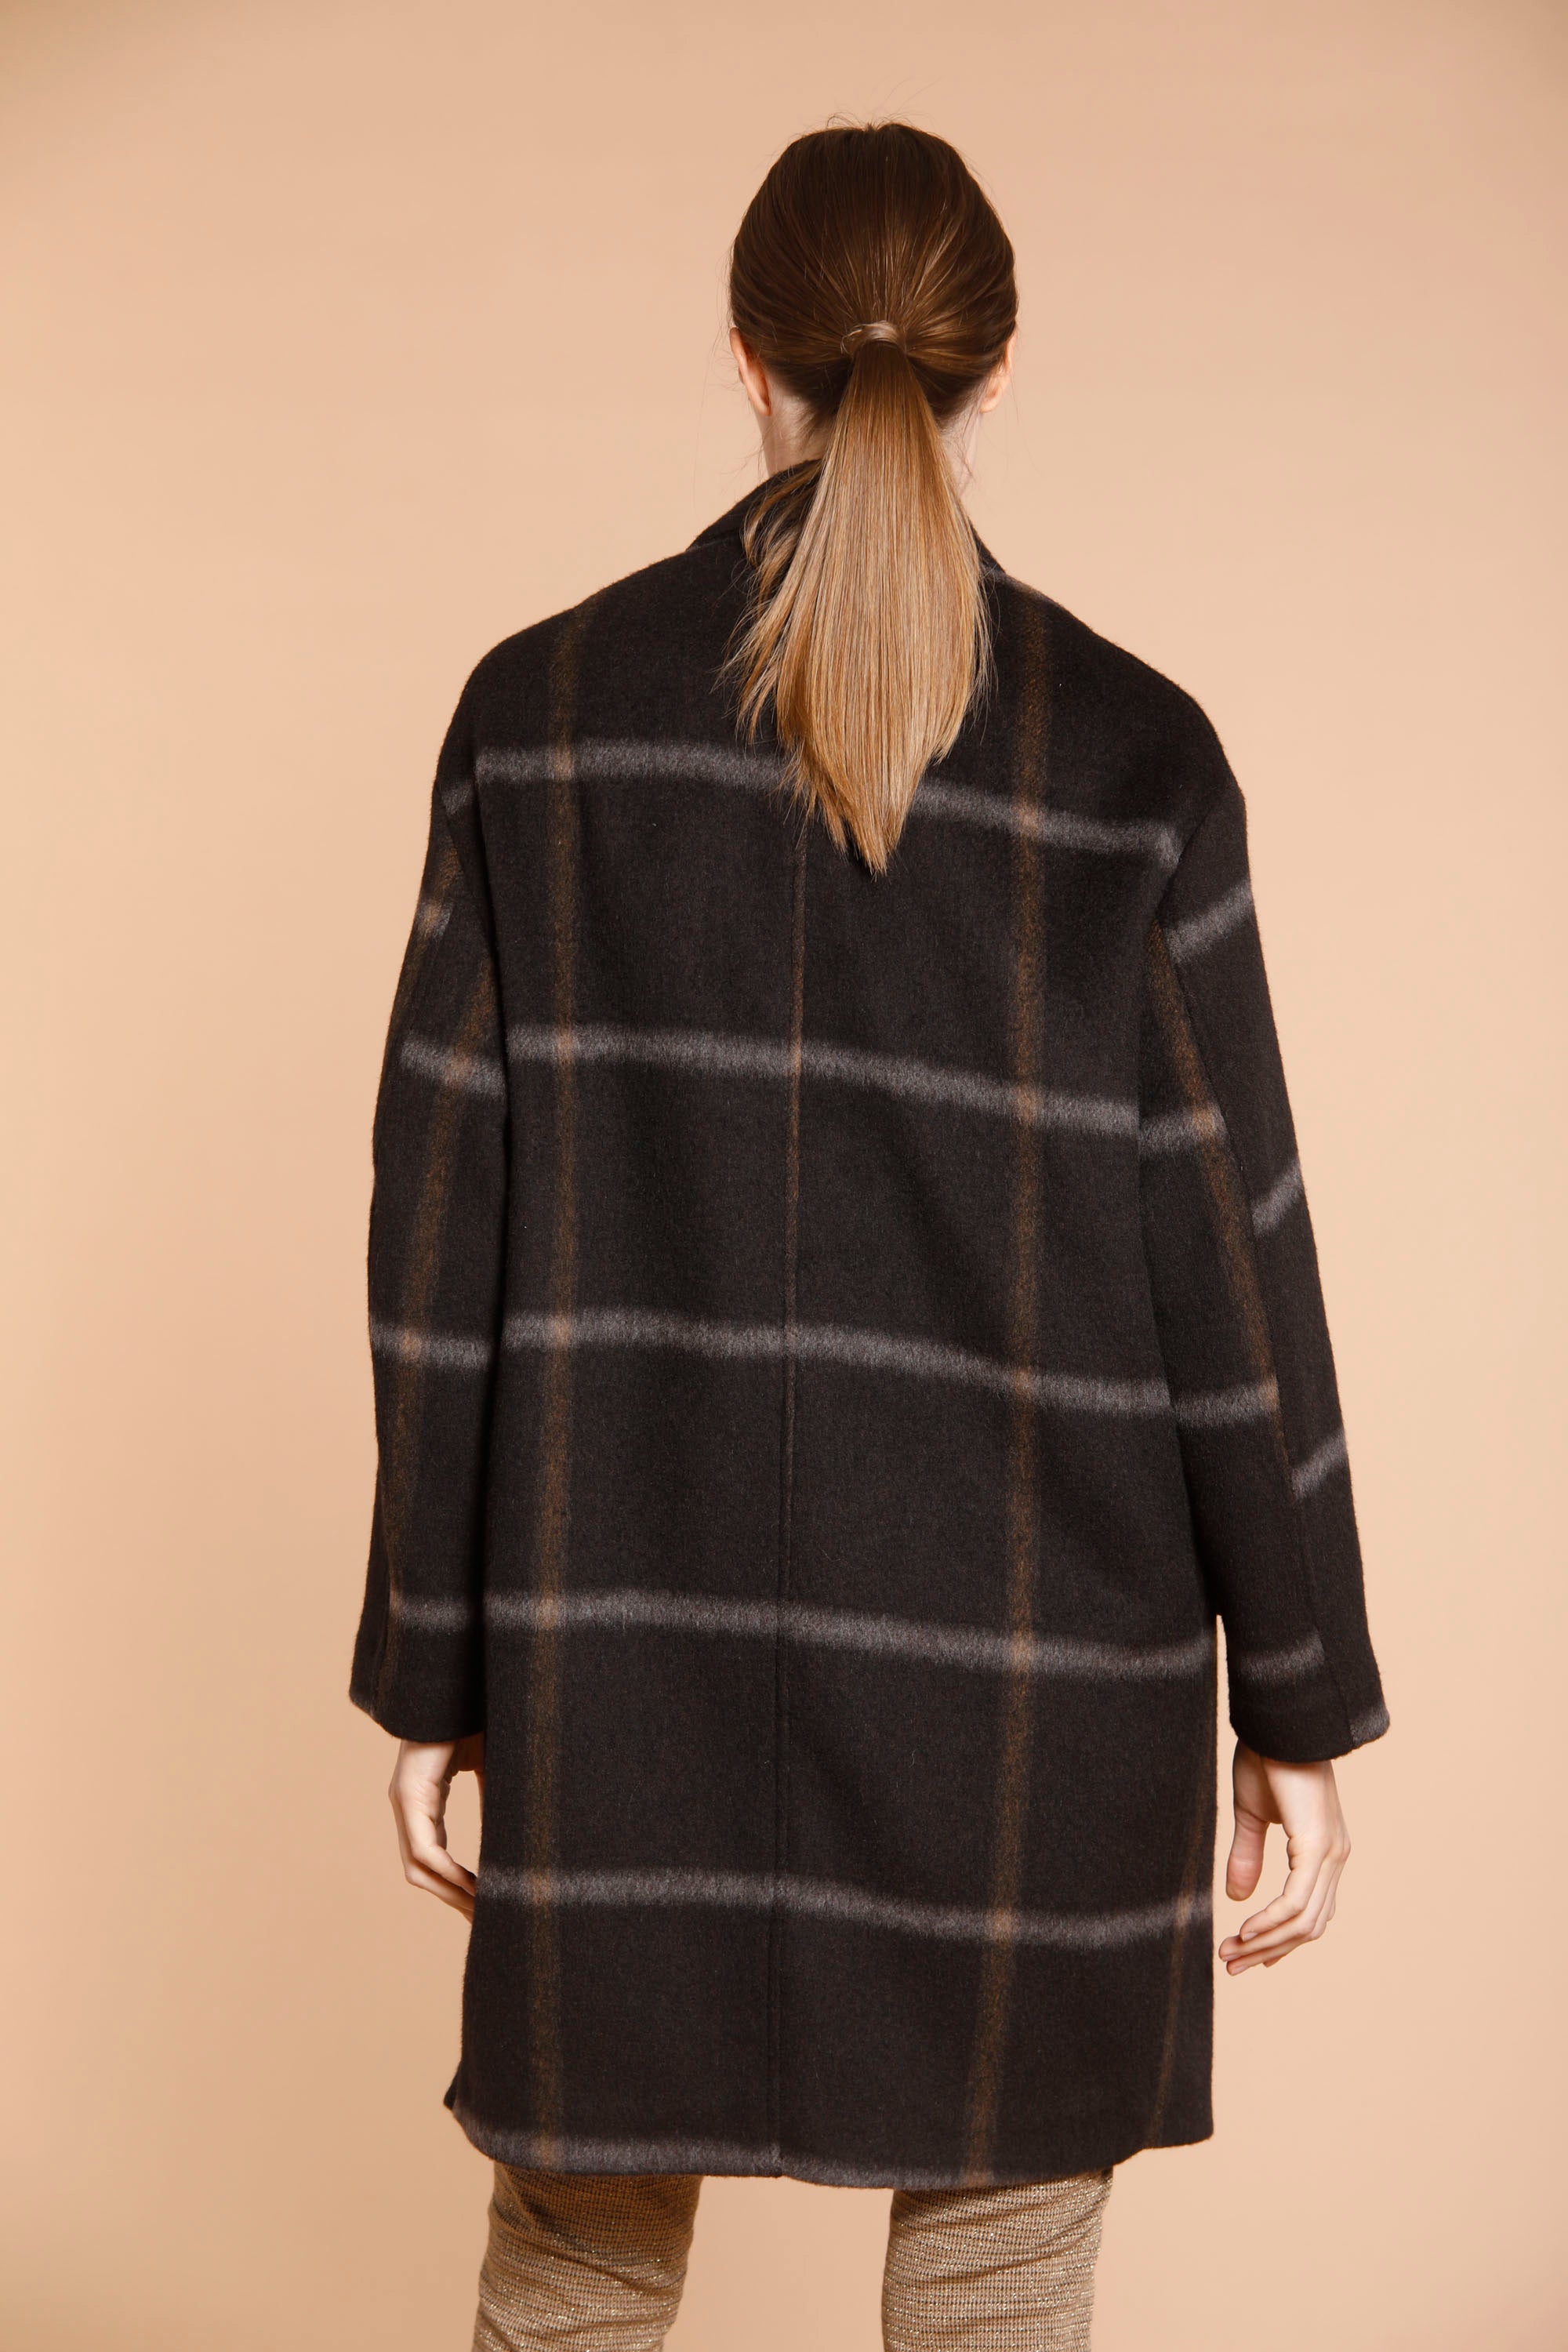 Image 6 de manteau femme en laine modèle Isabel Coat couleur marron motif carré de Mason's